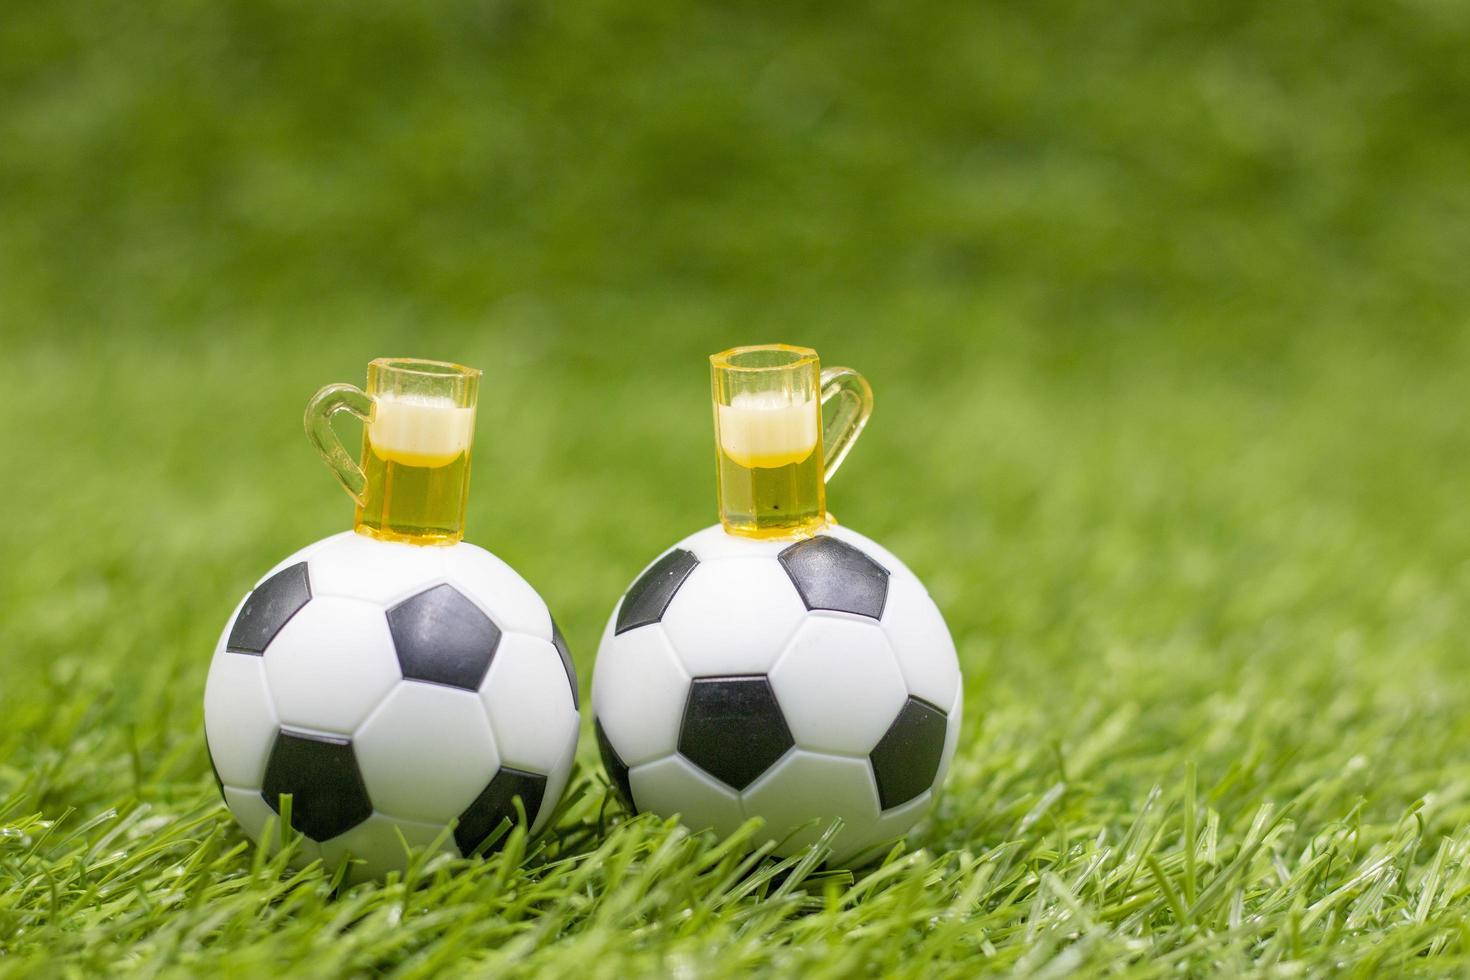 bola de futebol com copos de cerveja está na grama verde foto